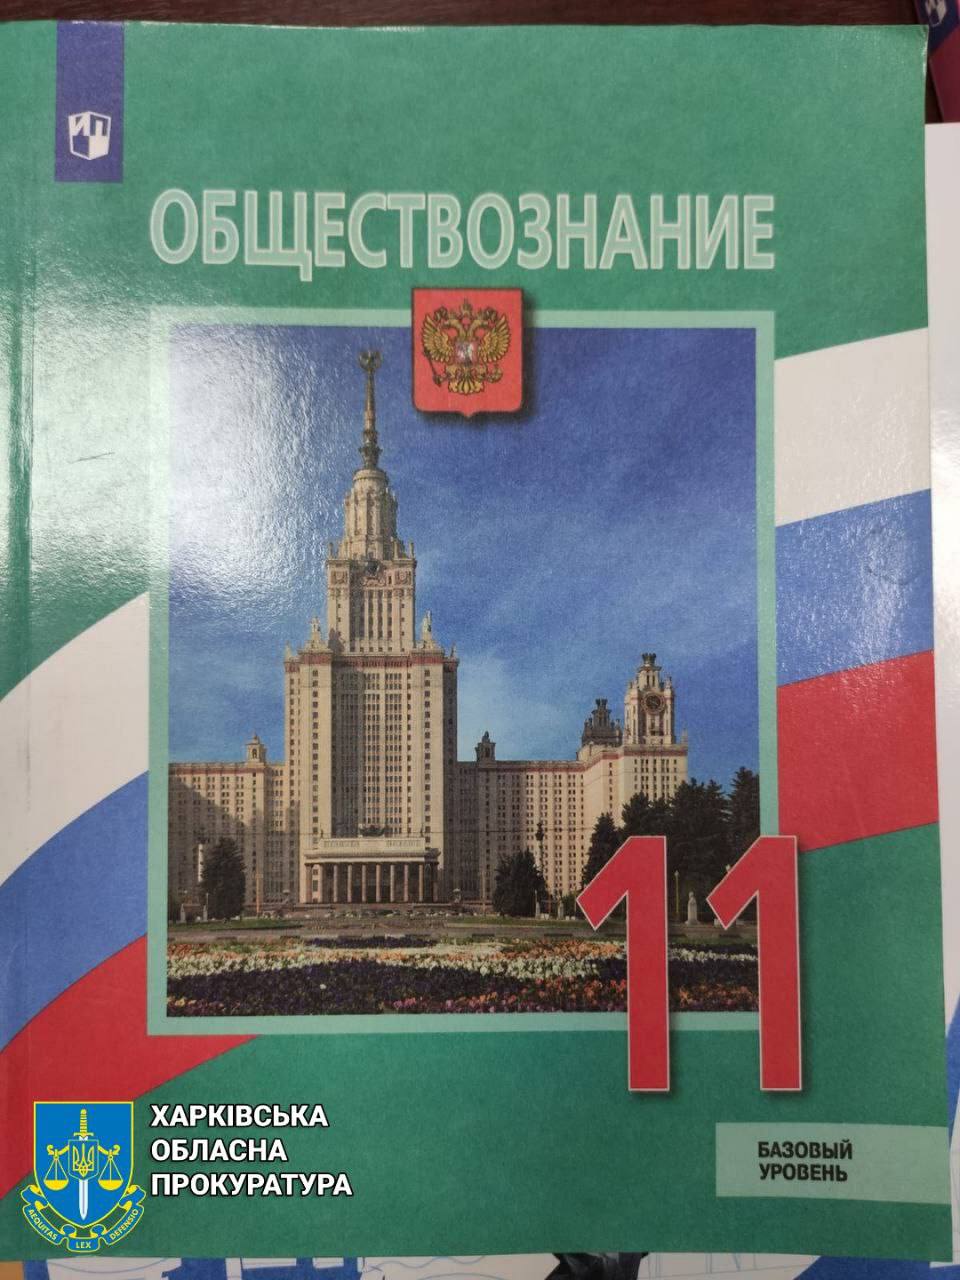 шкільні підручники з російською пропагандою 3